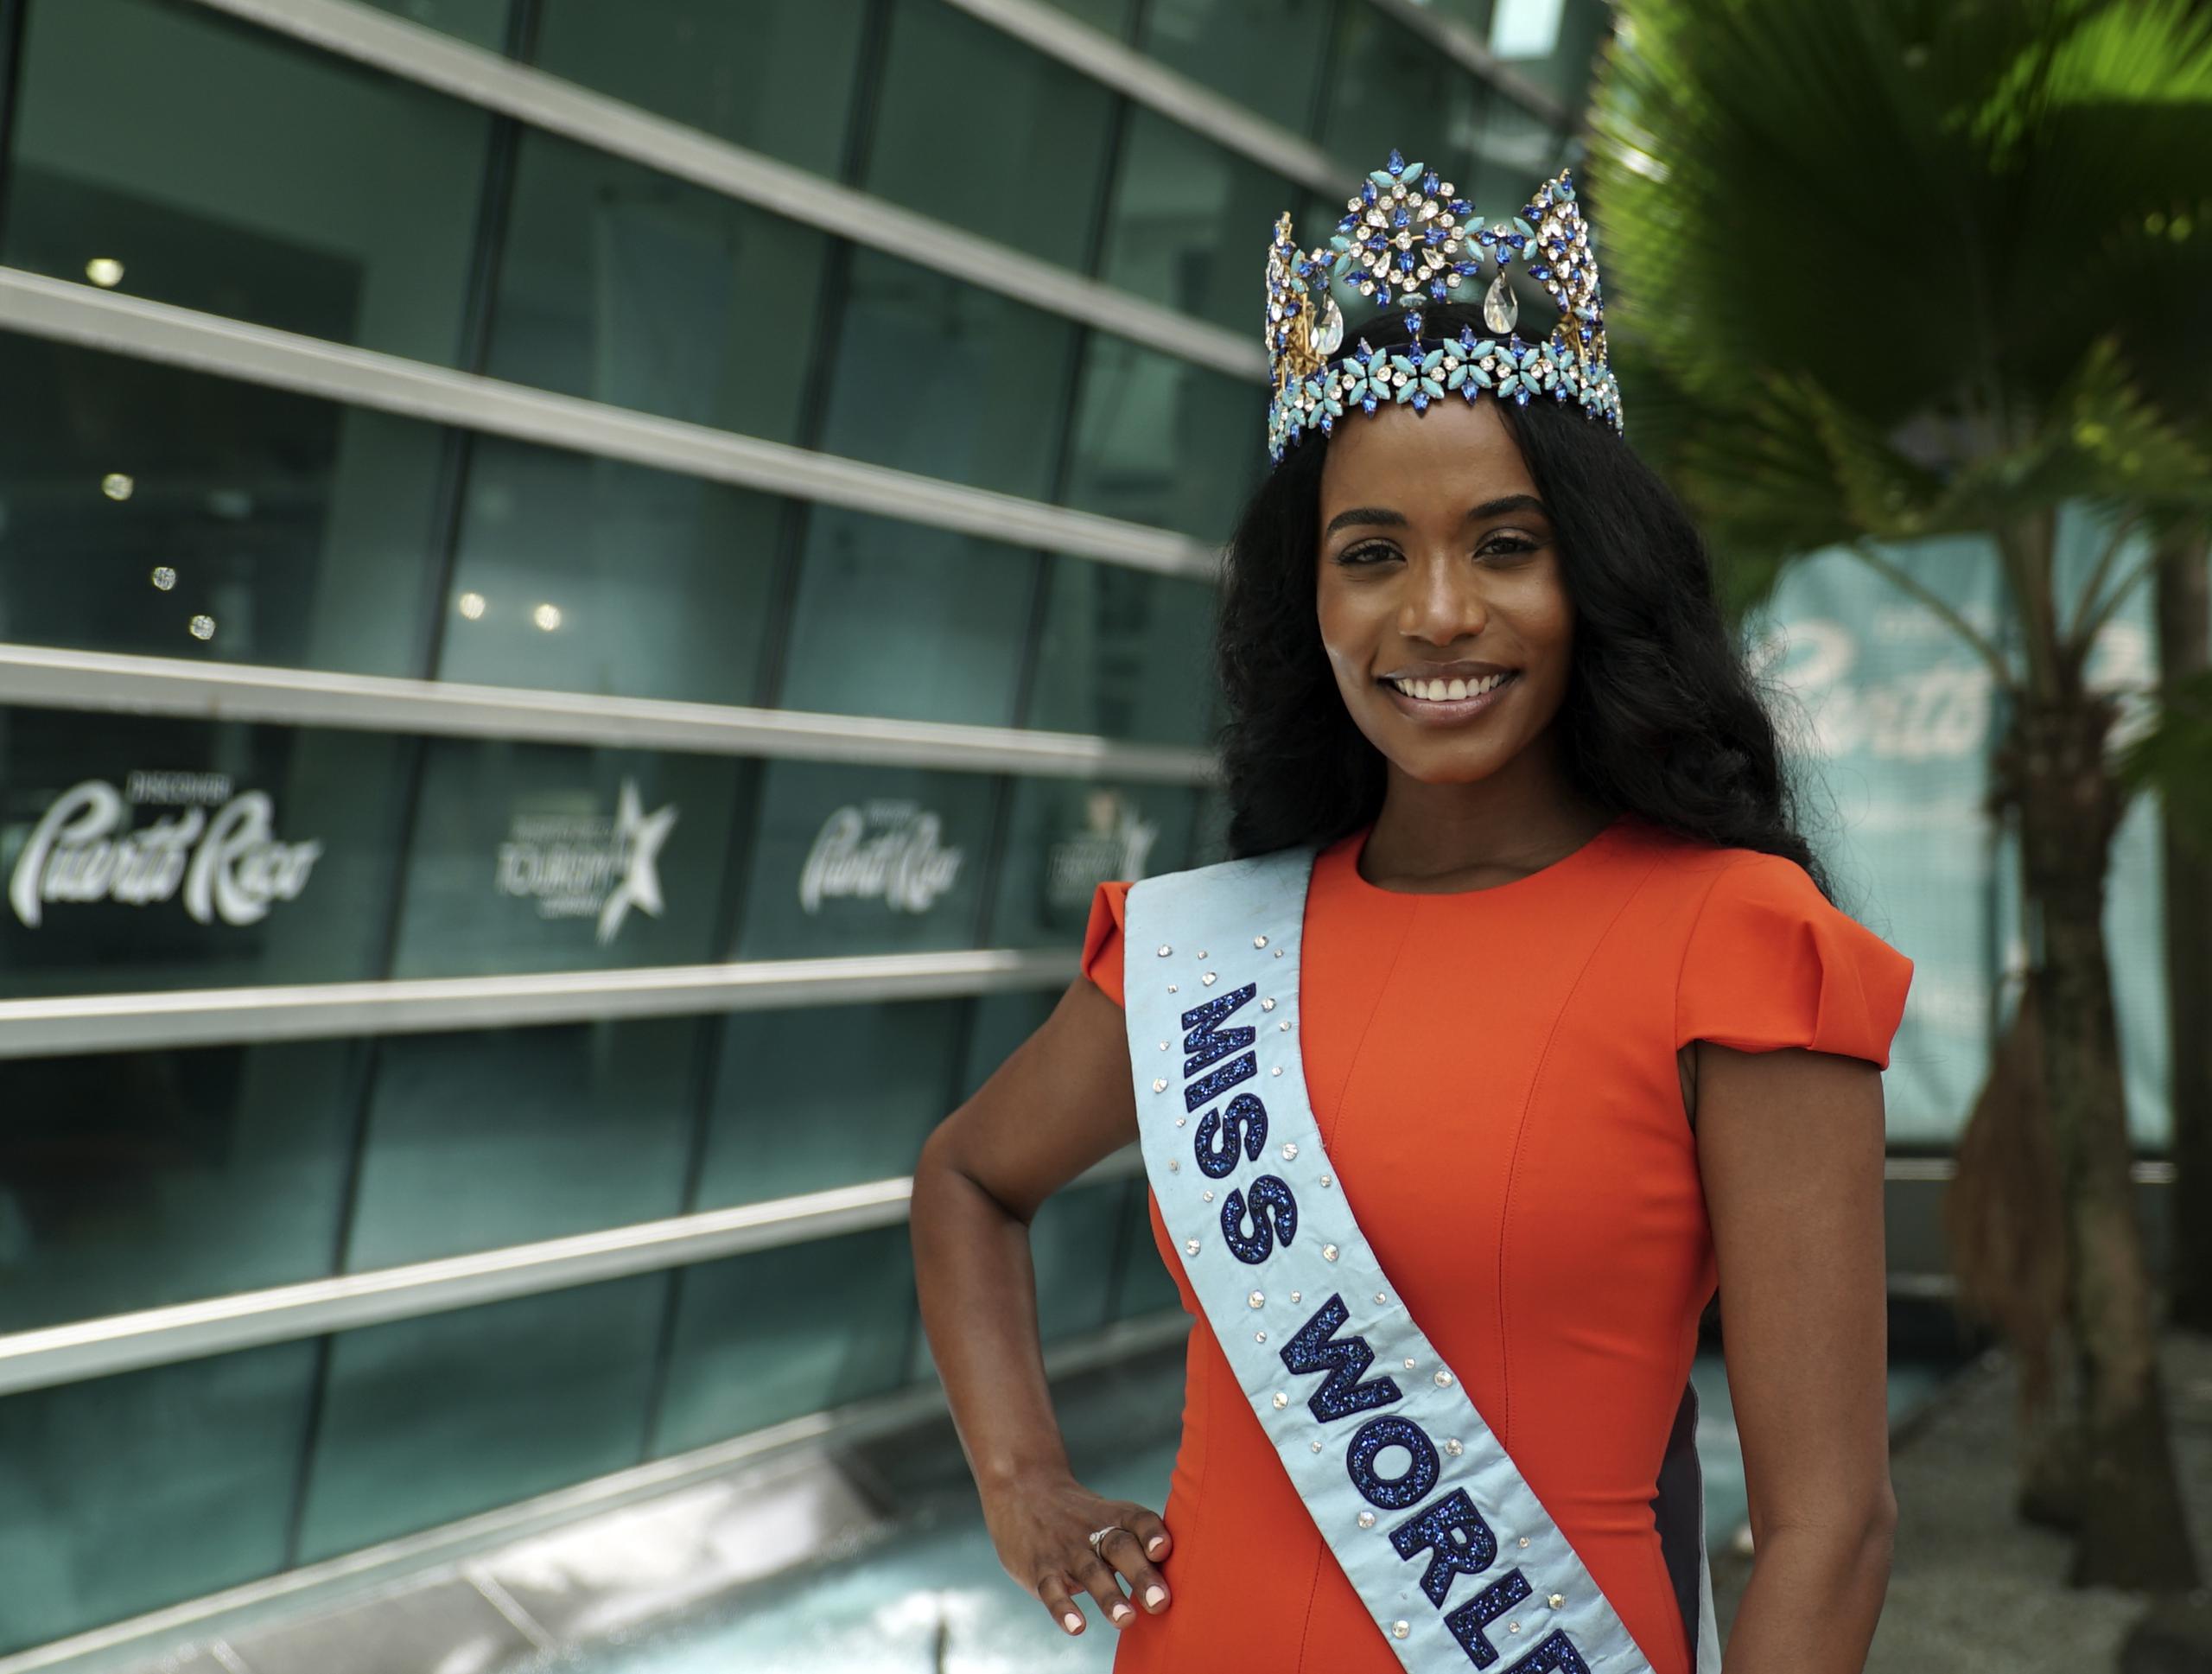 Si todo sigue como pinta, Miss Mundo 2019, Toni-Ann- Singh, finalmente pasará la corona.